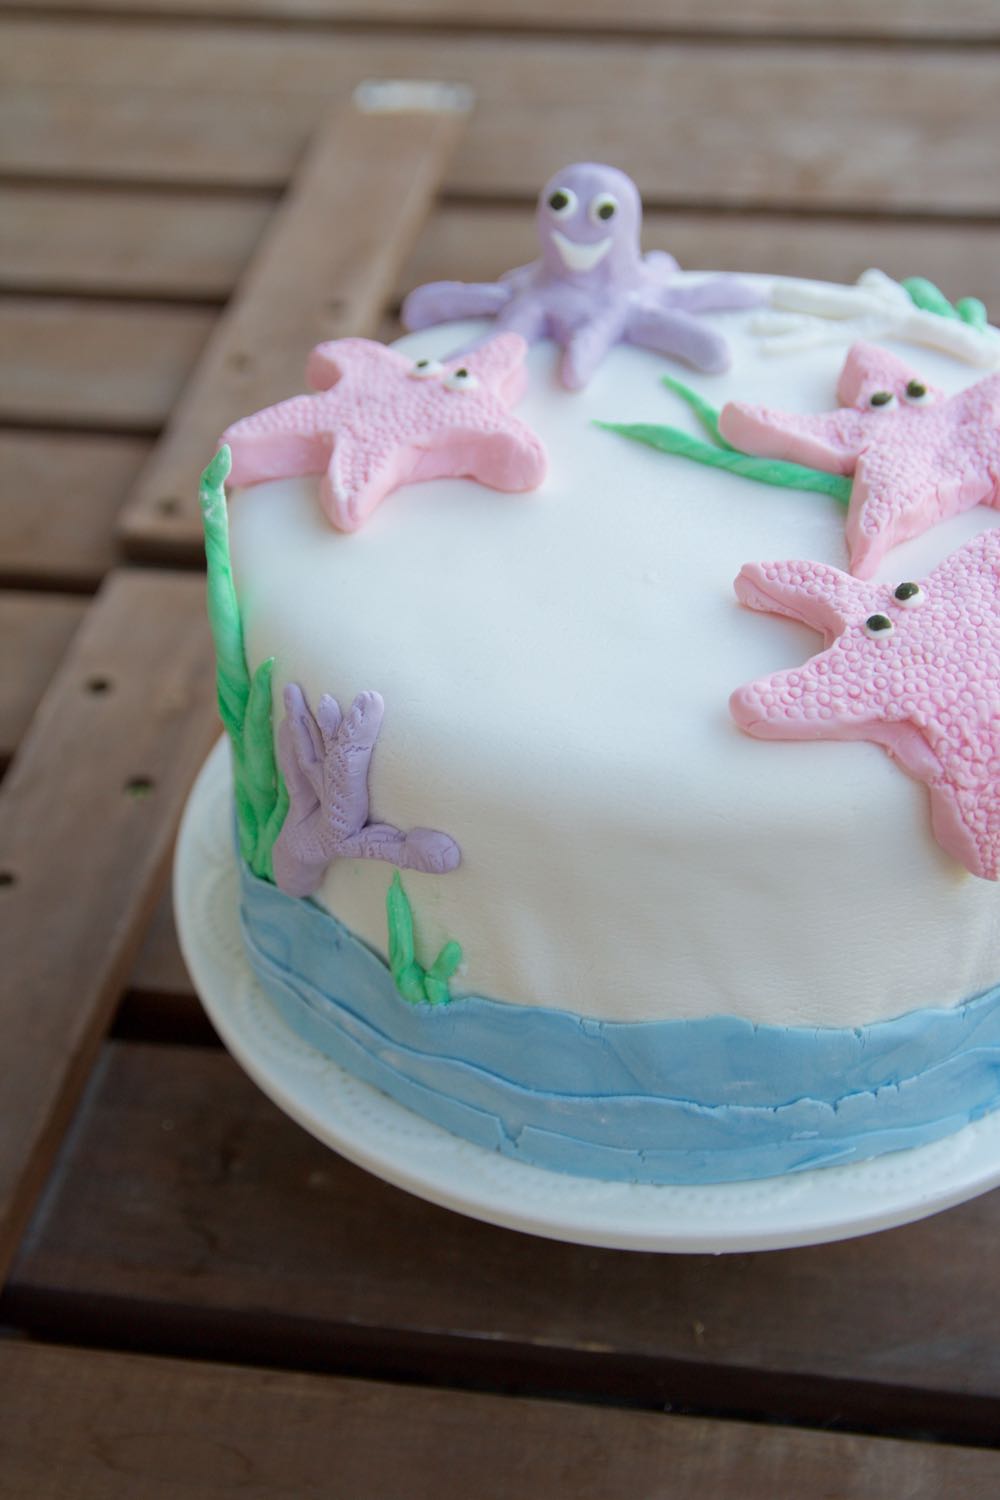 ocean themed fondant cake for a little girl's birthday